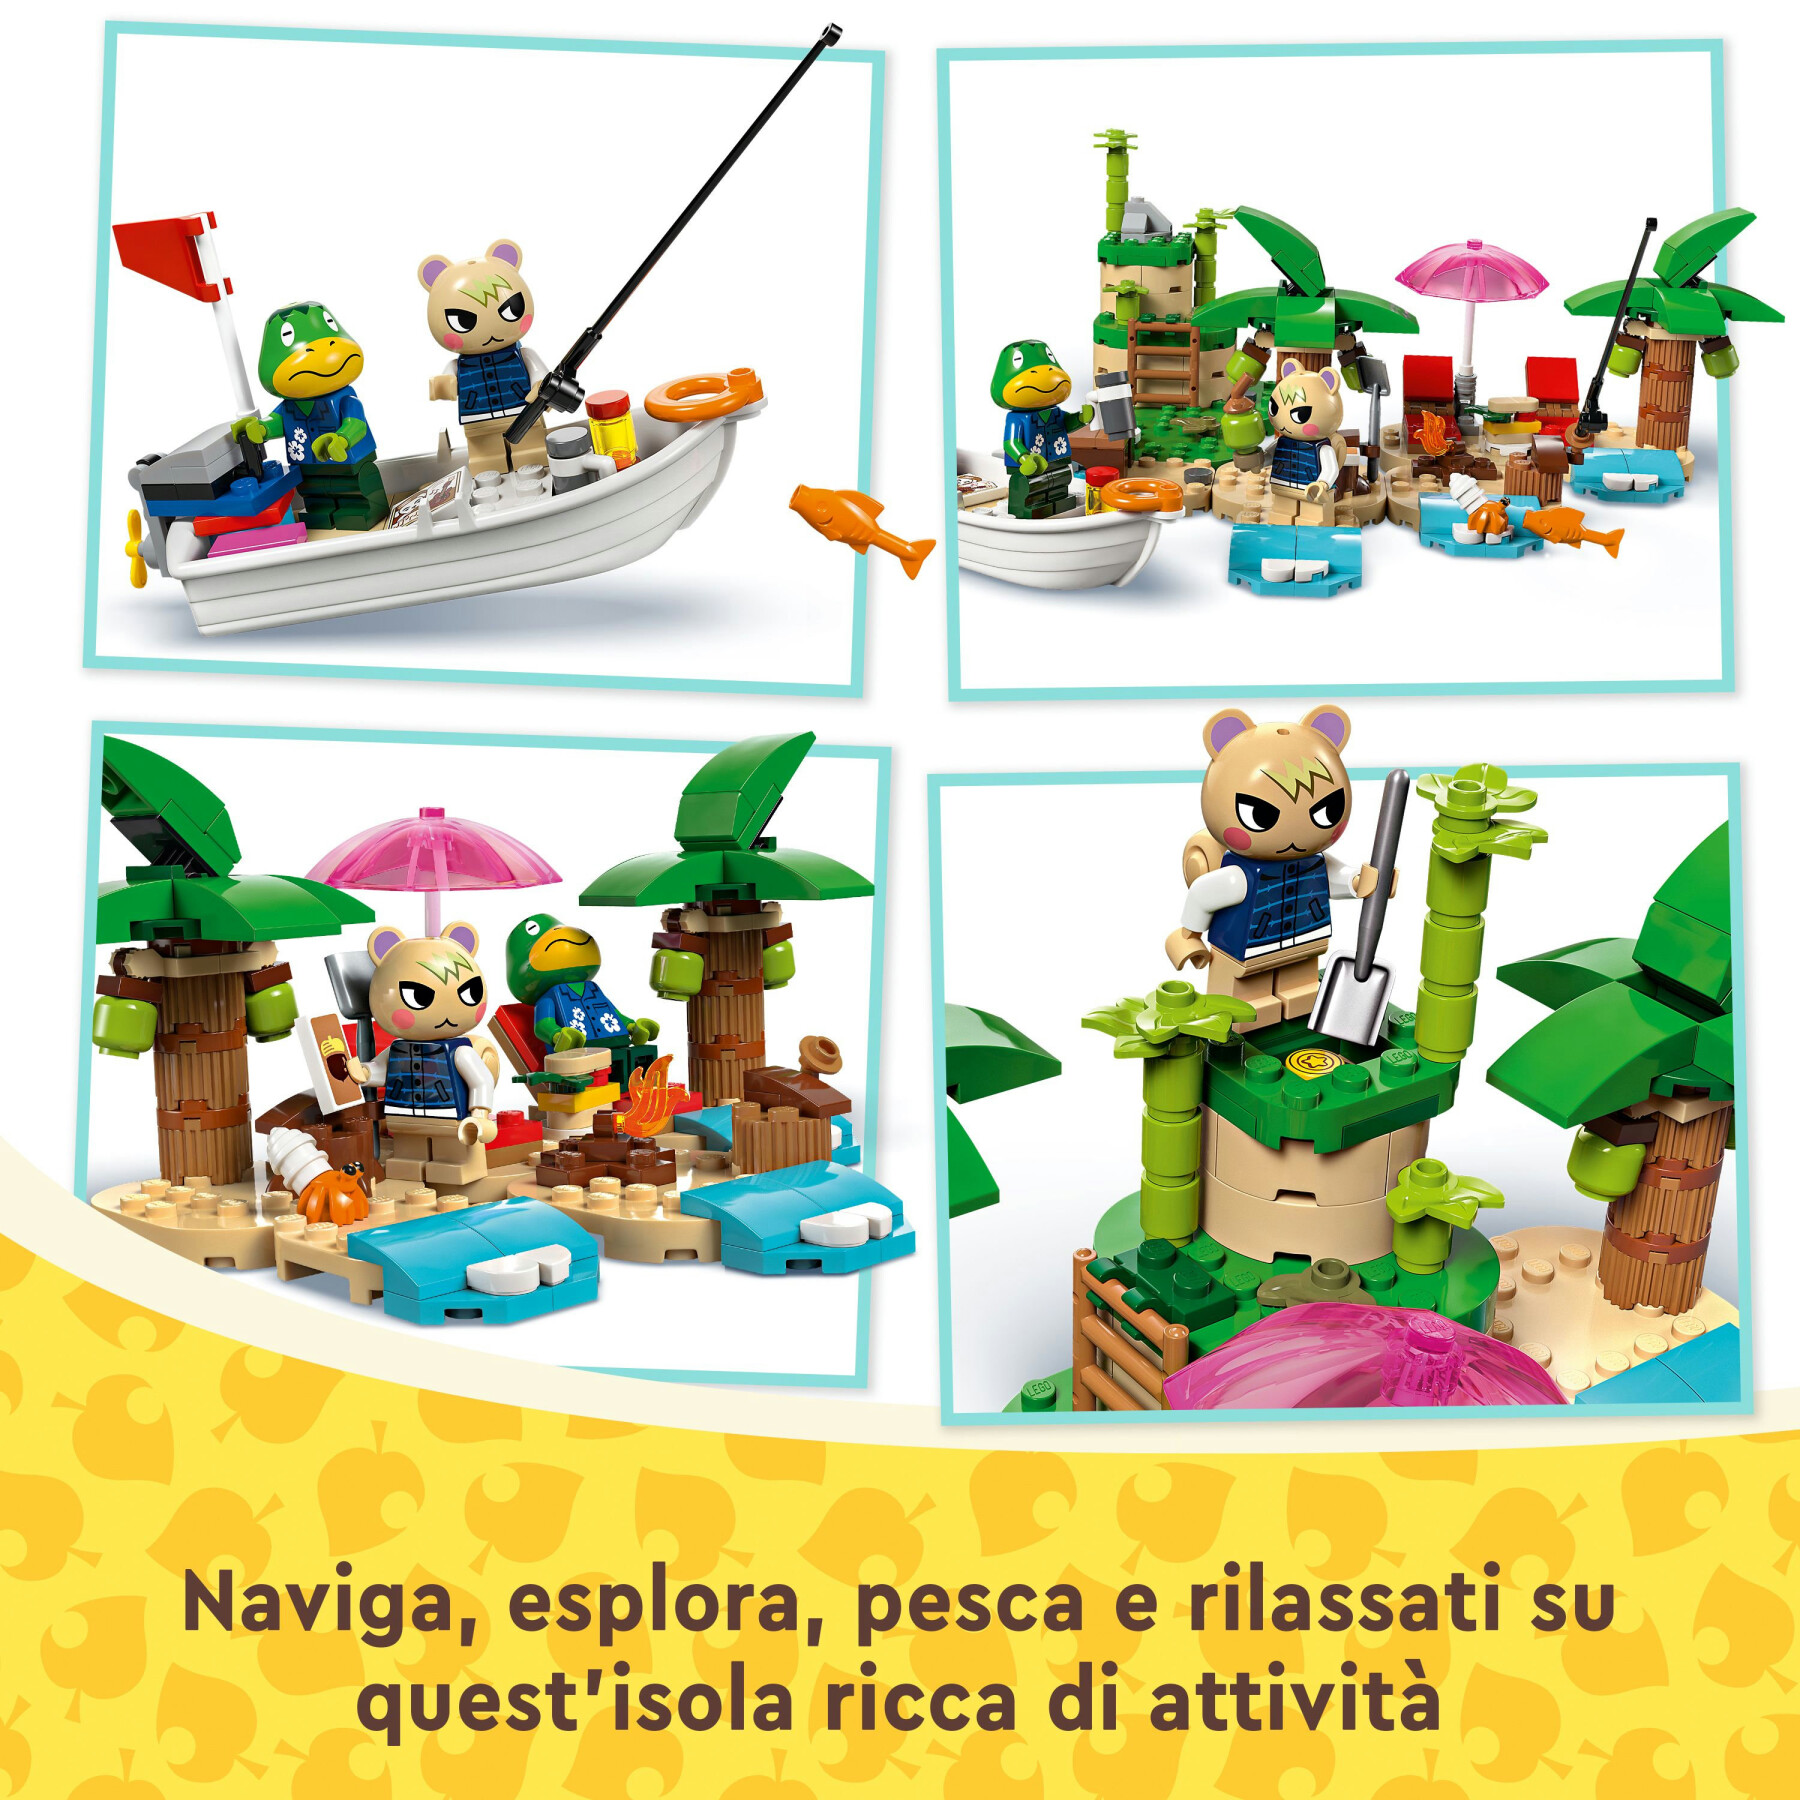 Lego animal crossing 77048 tour in barca di remo, giochi creativi per bambini 6+ con 2 personaggi della serie di videogiochi - Lego Animal Crossing